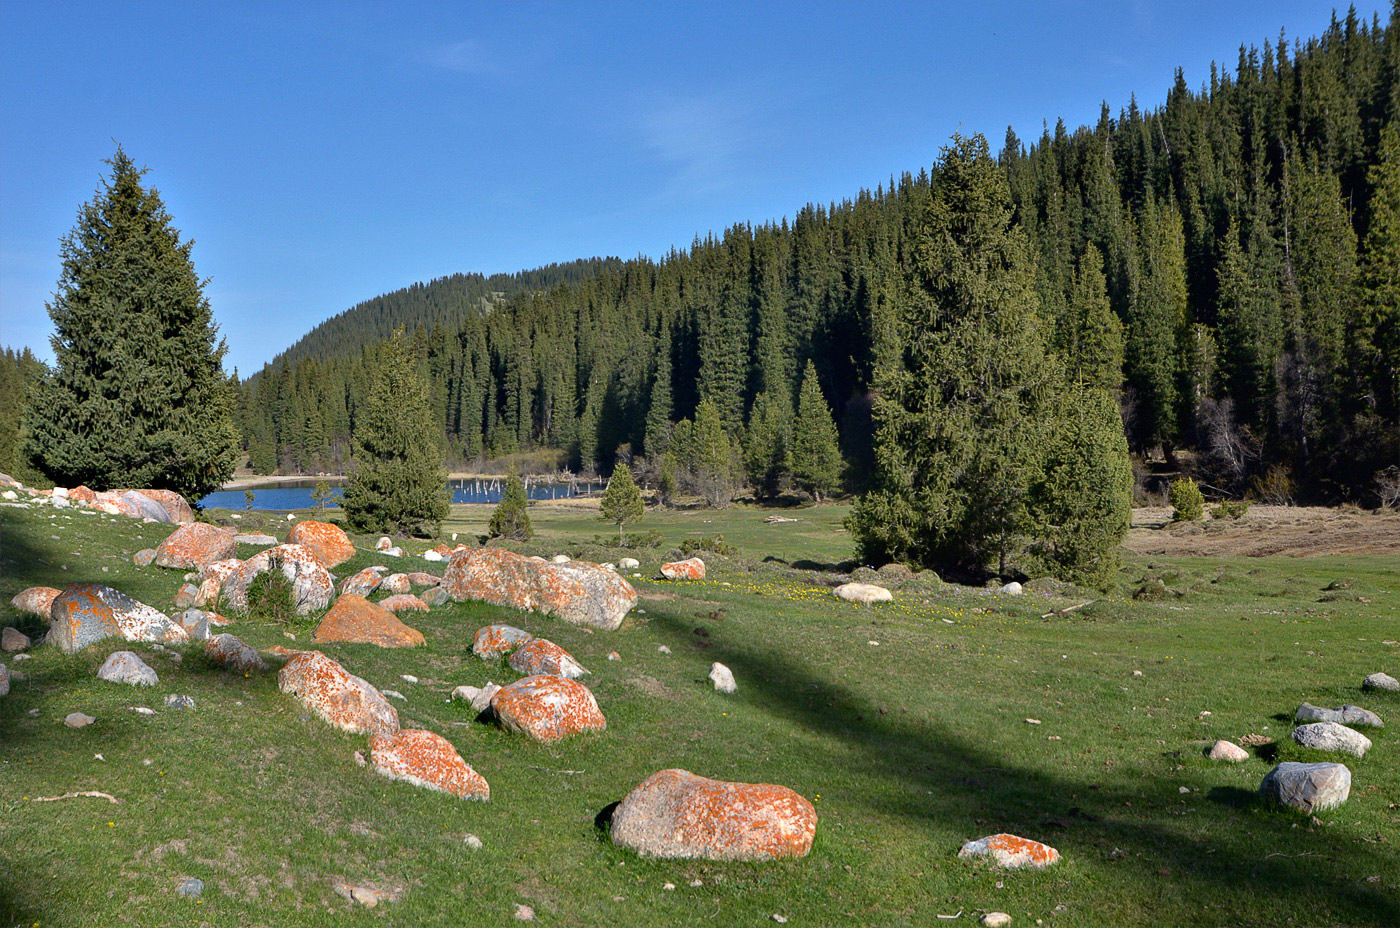 Григорьевское ущелье, image of landscape/habitat.